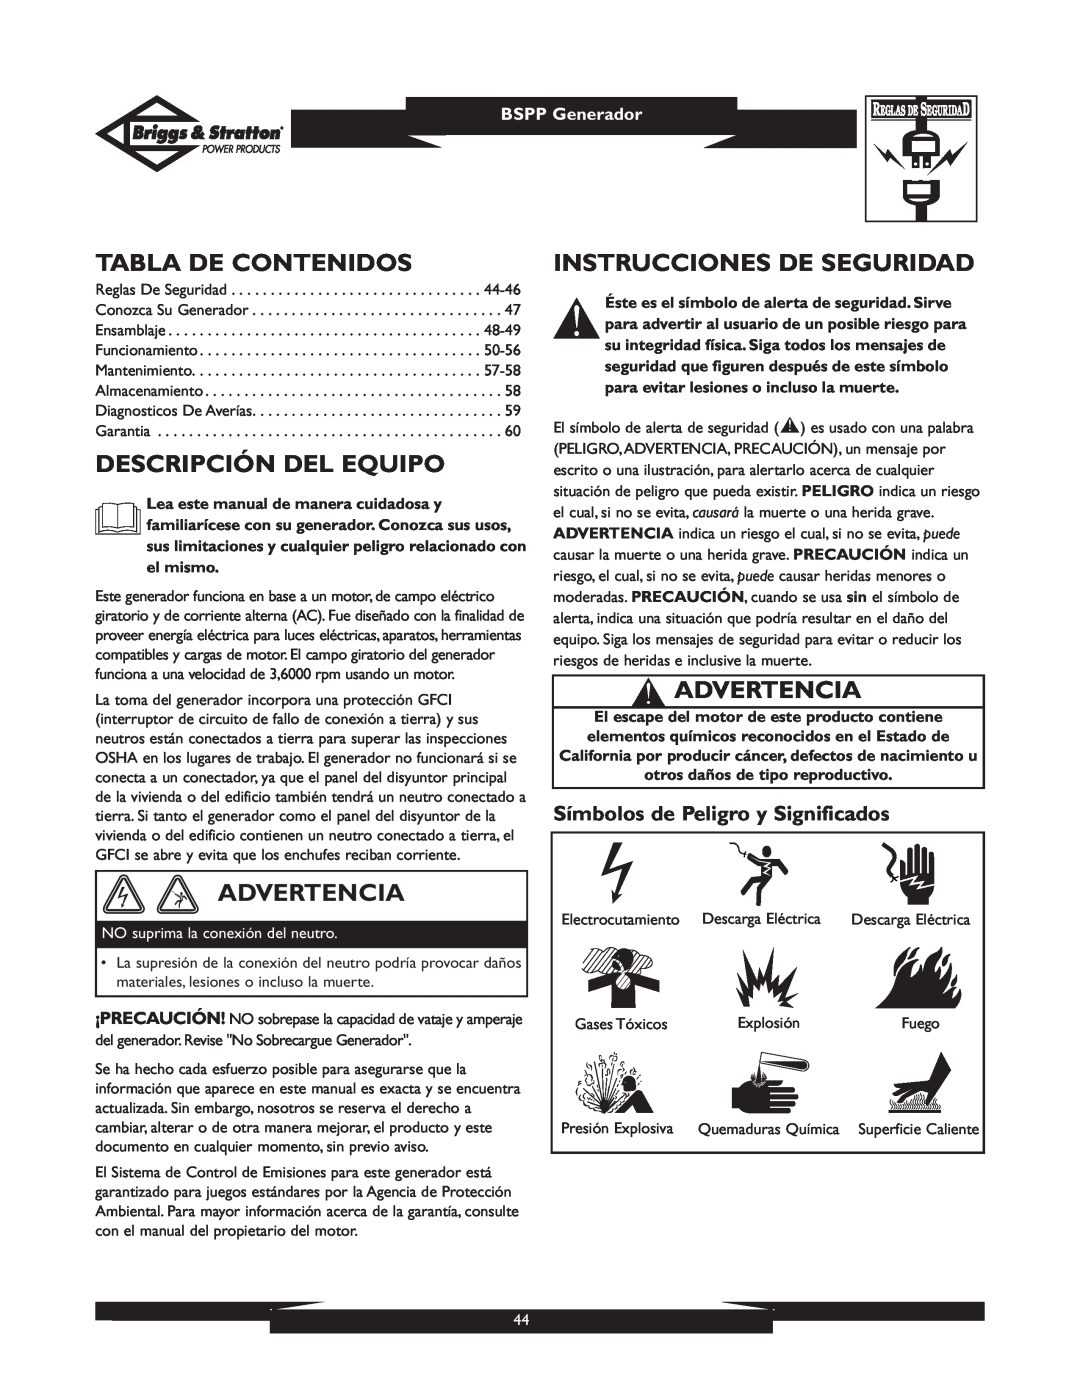 Briggs & Stratton PRO8000 owner manual Tabla De Contenidos, Descripción Del Equipo, Advertencia, Instrucciones De Seguridad 